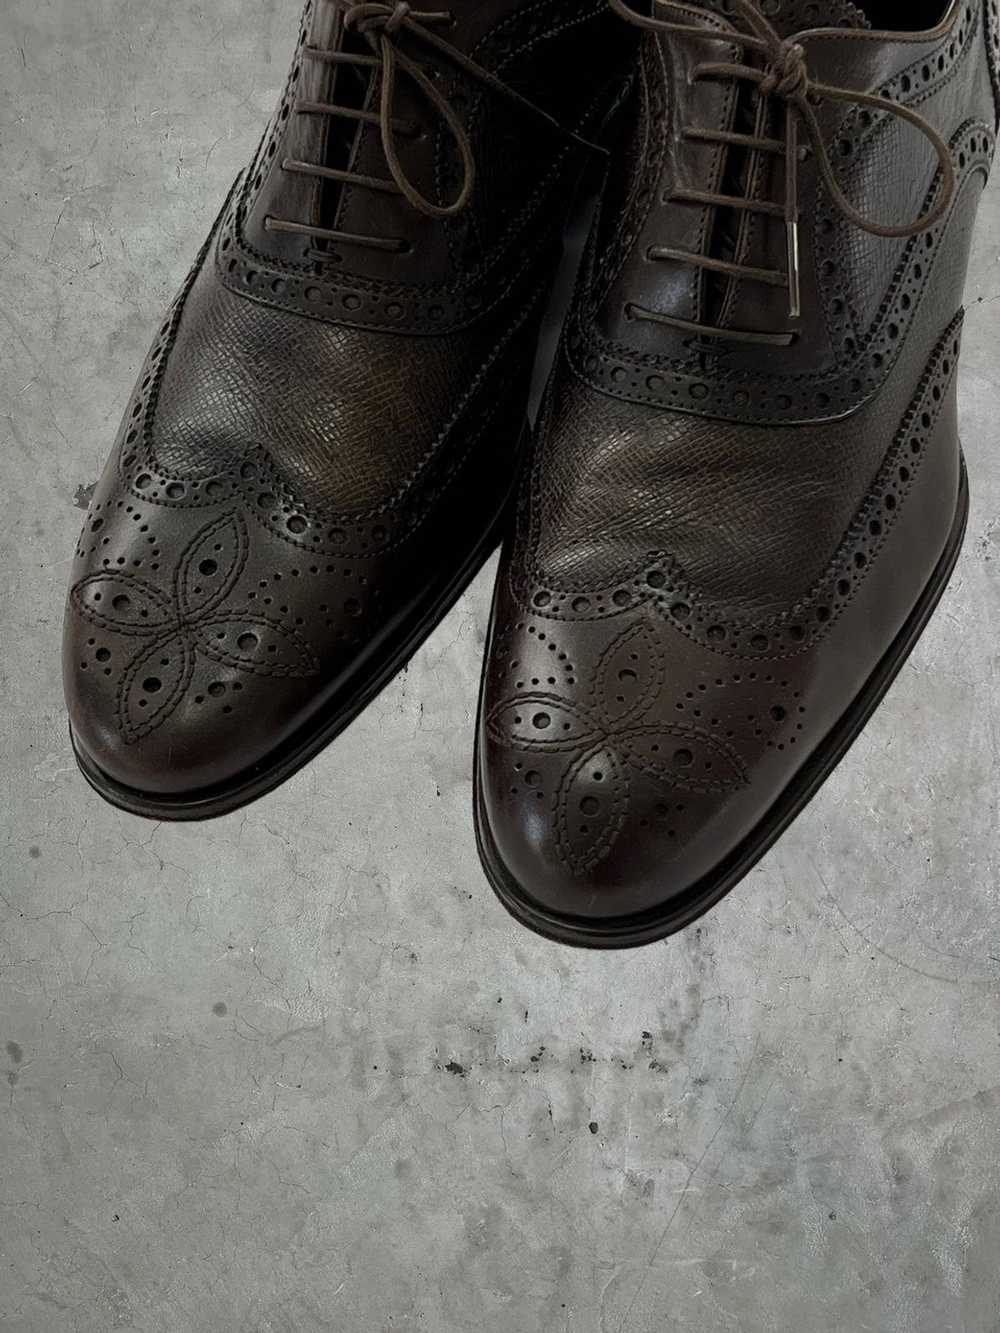 Louis Vuitton Louis Vuitton Detailed Leather Shoes - image 4